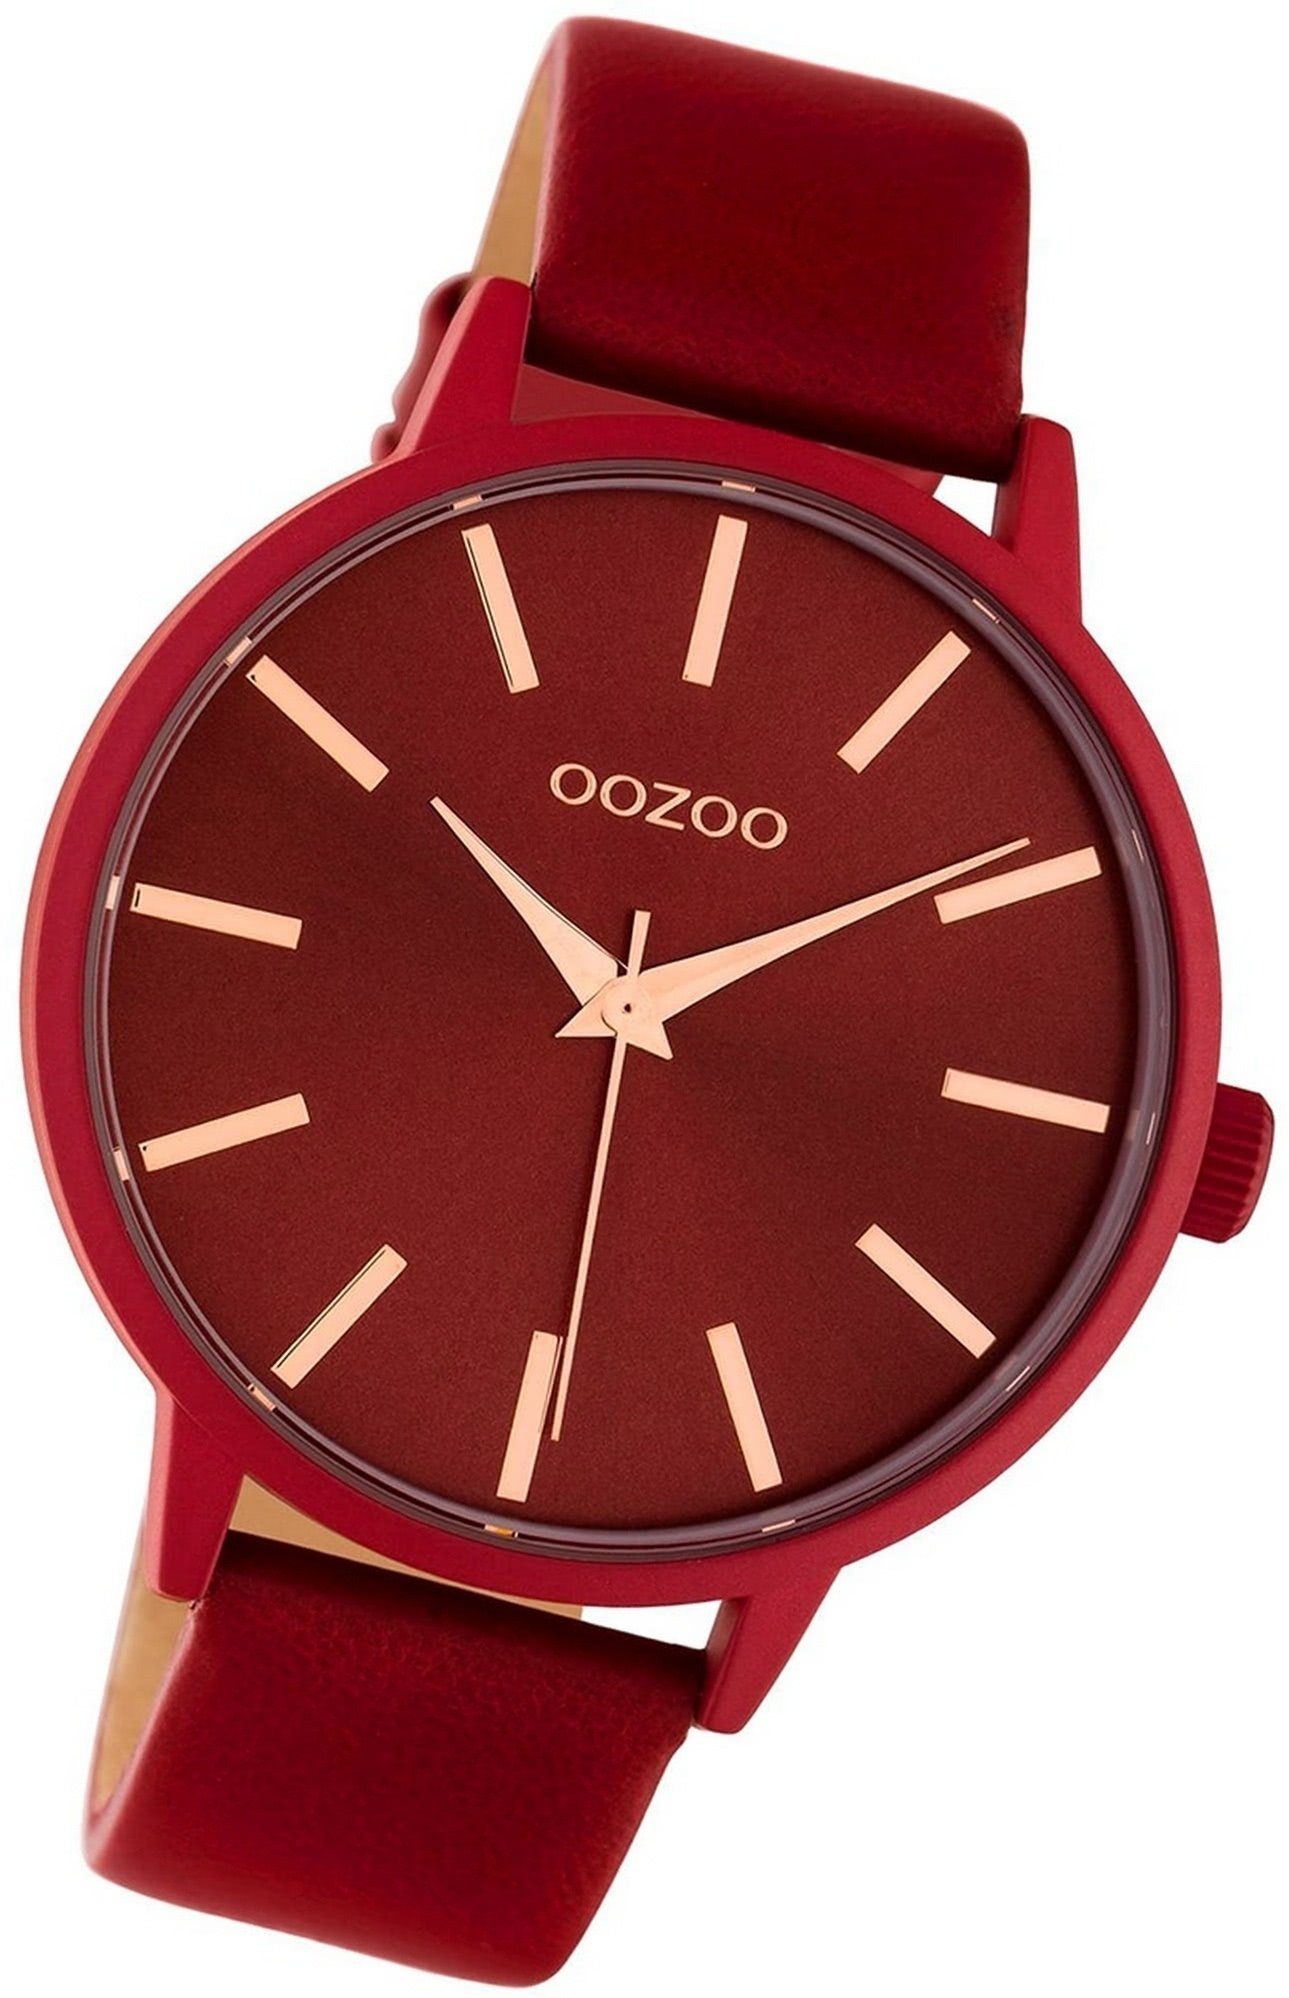 OOZOO Quarzuhr Oozoo Leder Damen Uhr C10618 Analog, Damenuhr Lederarmband rot, rundes Gehäuse, groß (ca. 42mm)